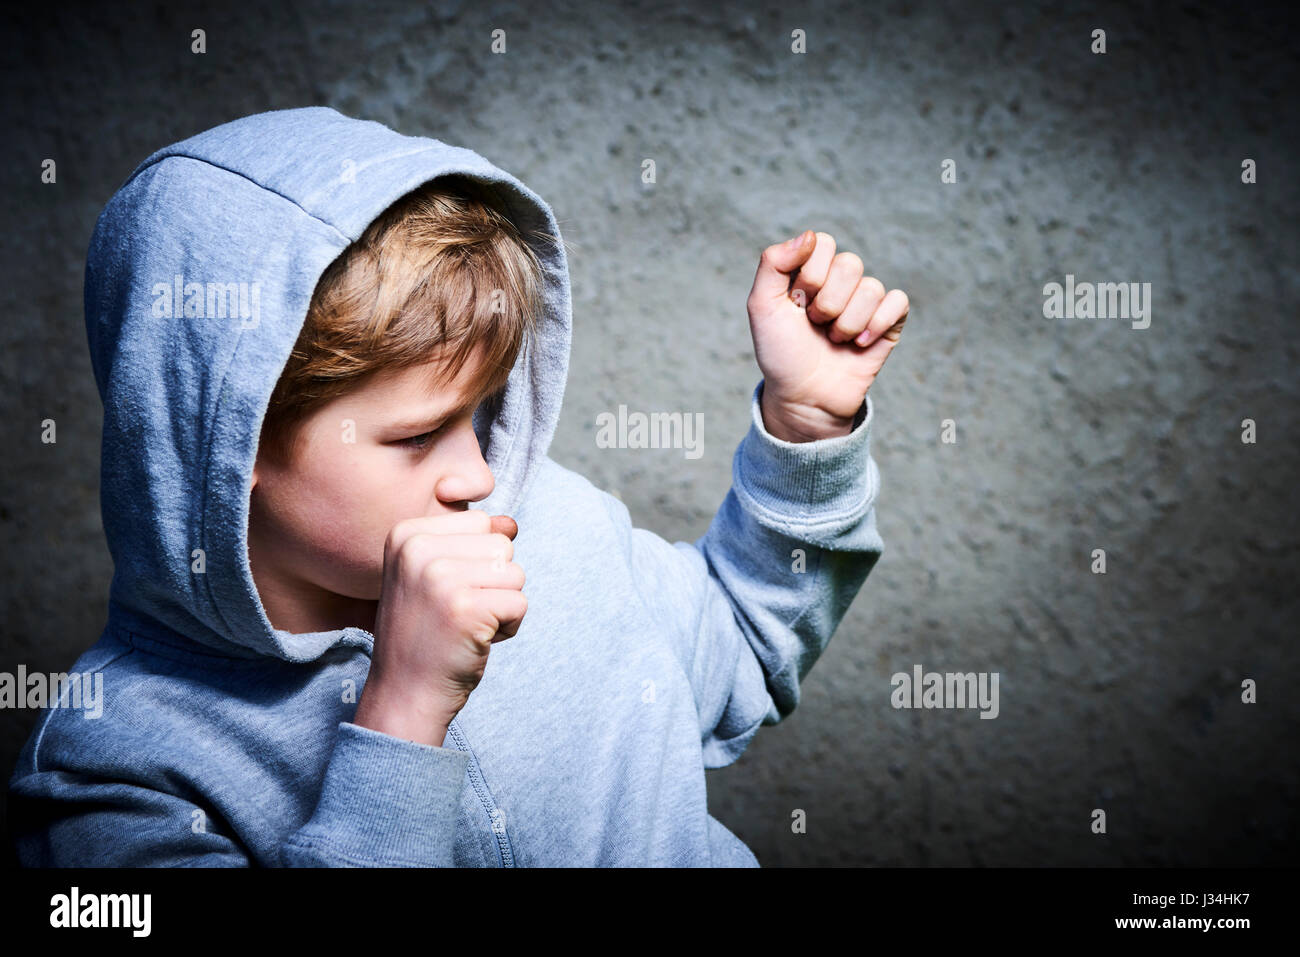 Garçon enfant adolescent apparence européenne serra les poings prêt à combattre sur gris grunge wall background, souffler, la protection Banque D'Images